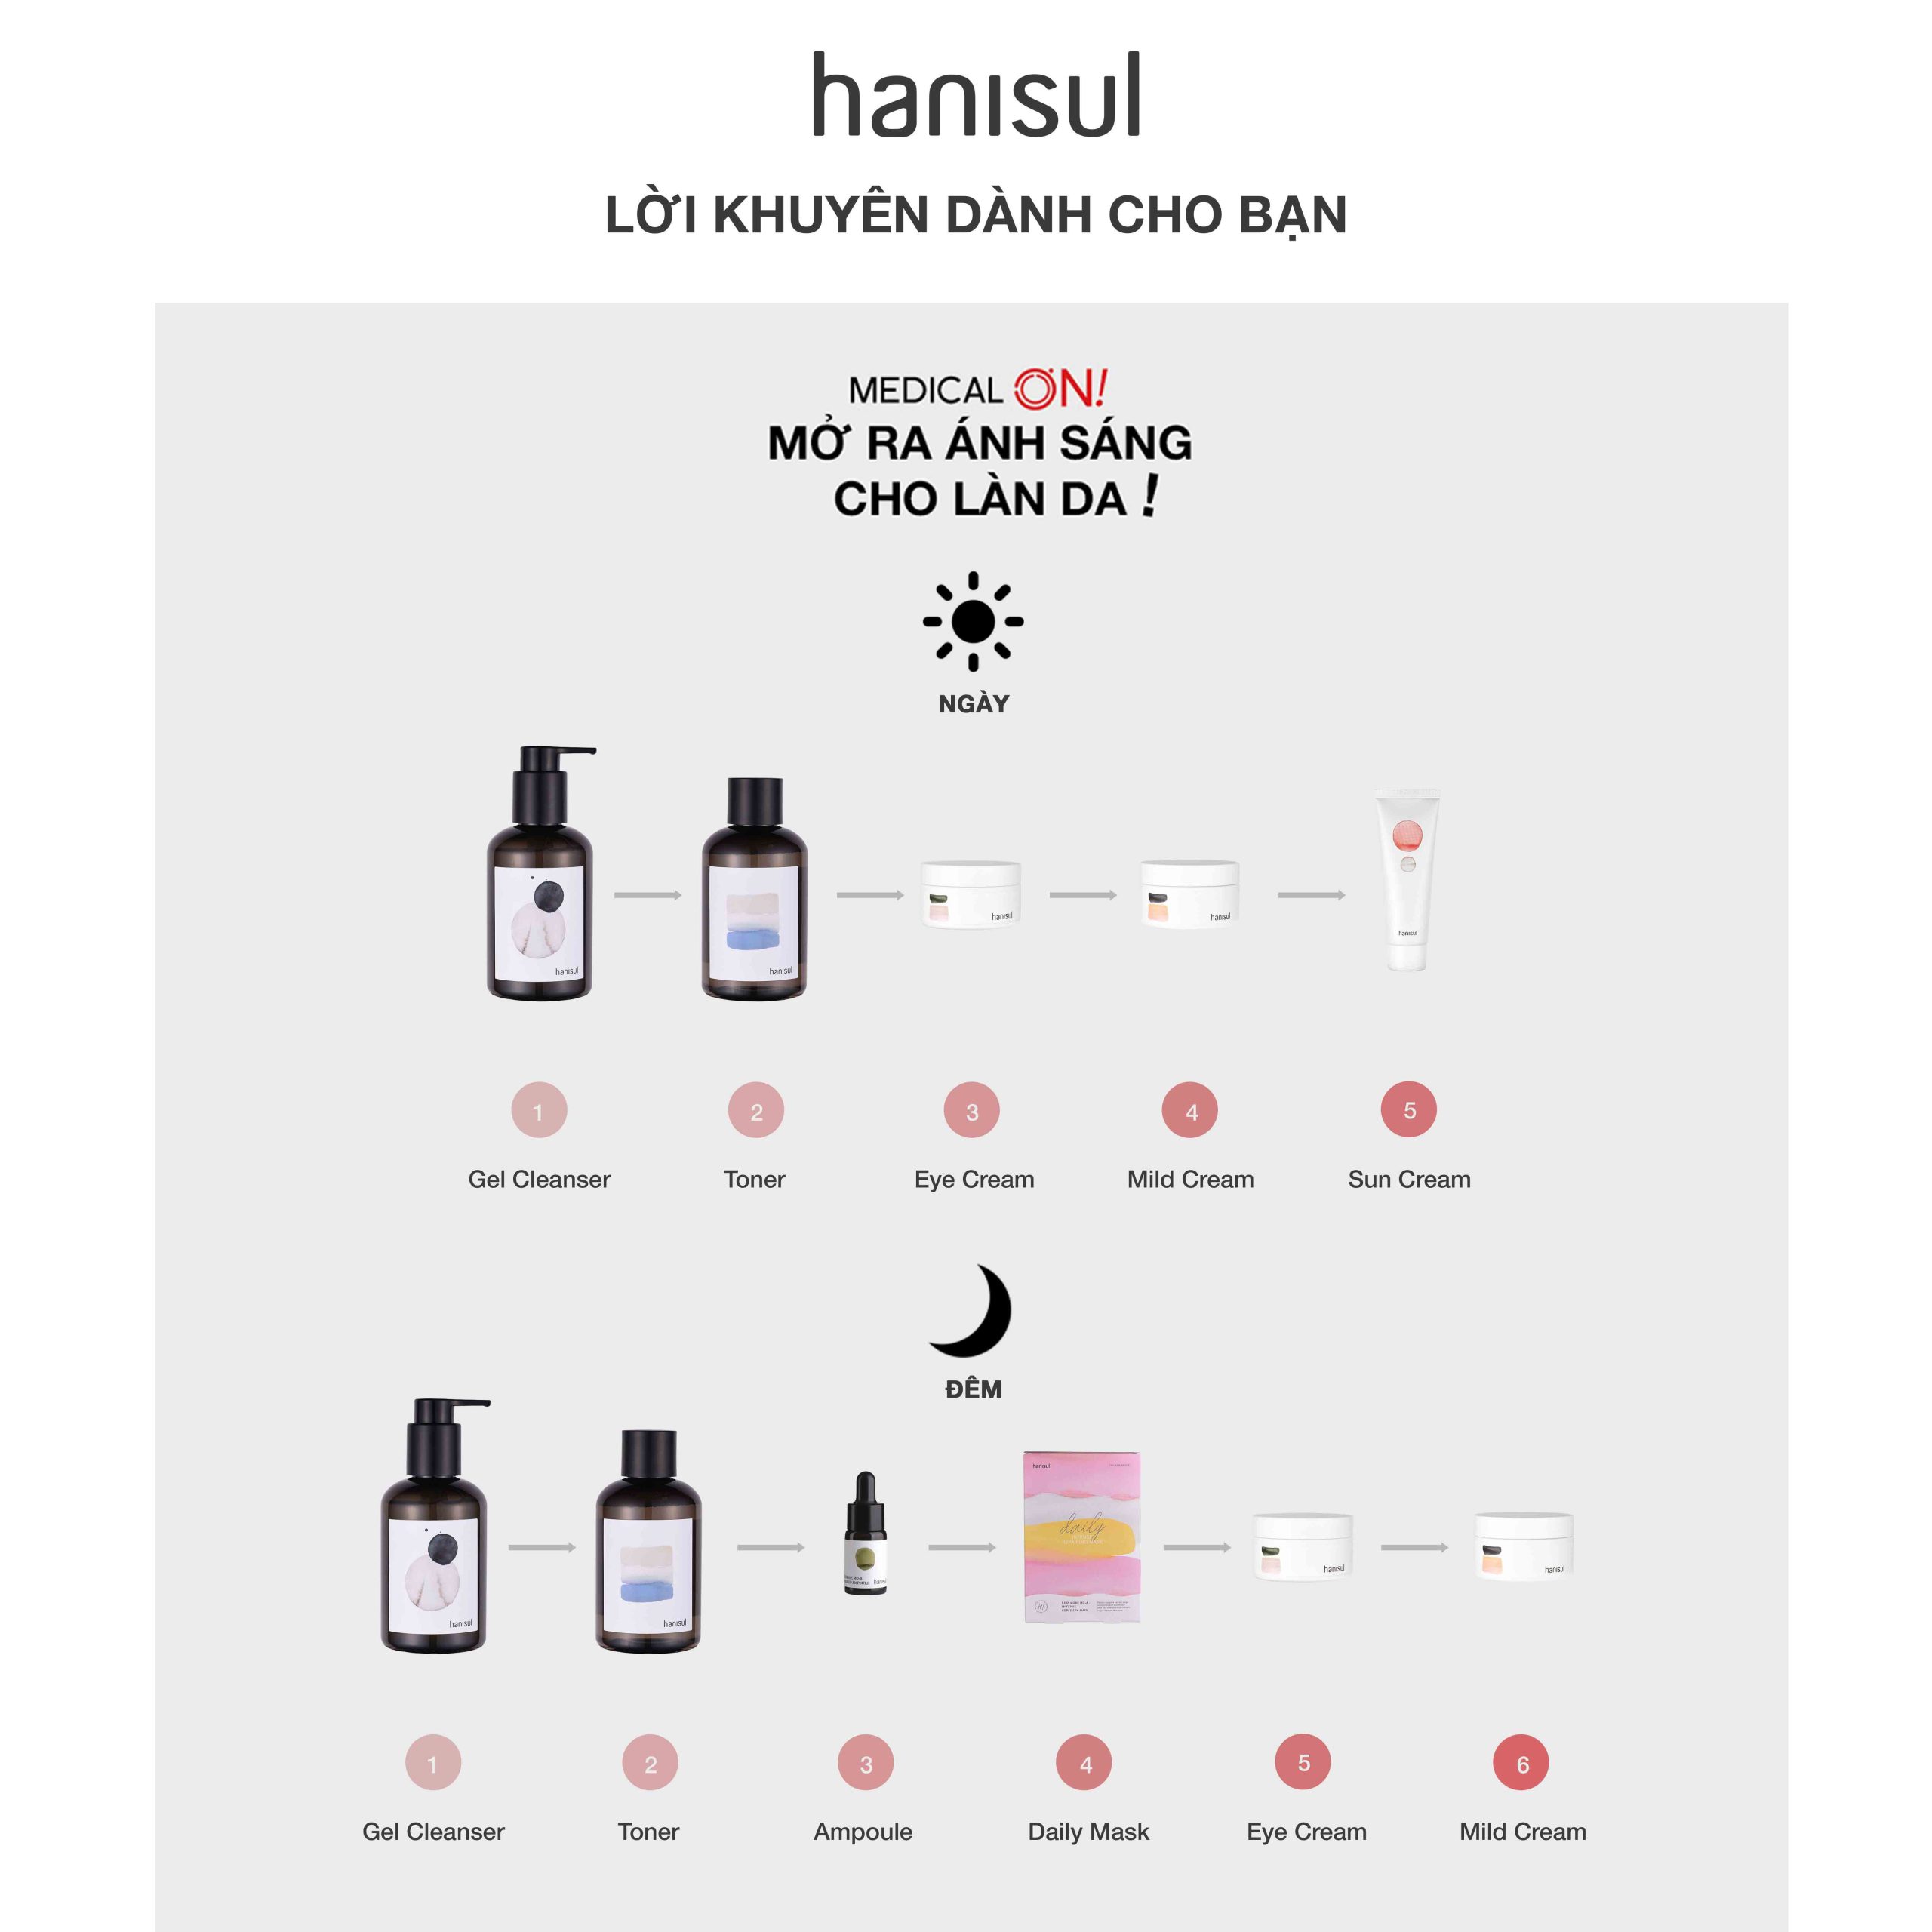 ضد آفتاب هانیسول Hanisul درای Spf50 حجم 50 میل | ضد لک، مناسب پوست نرمال و چرب